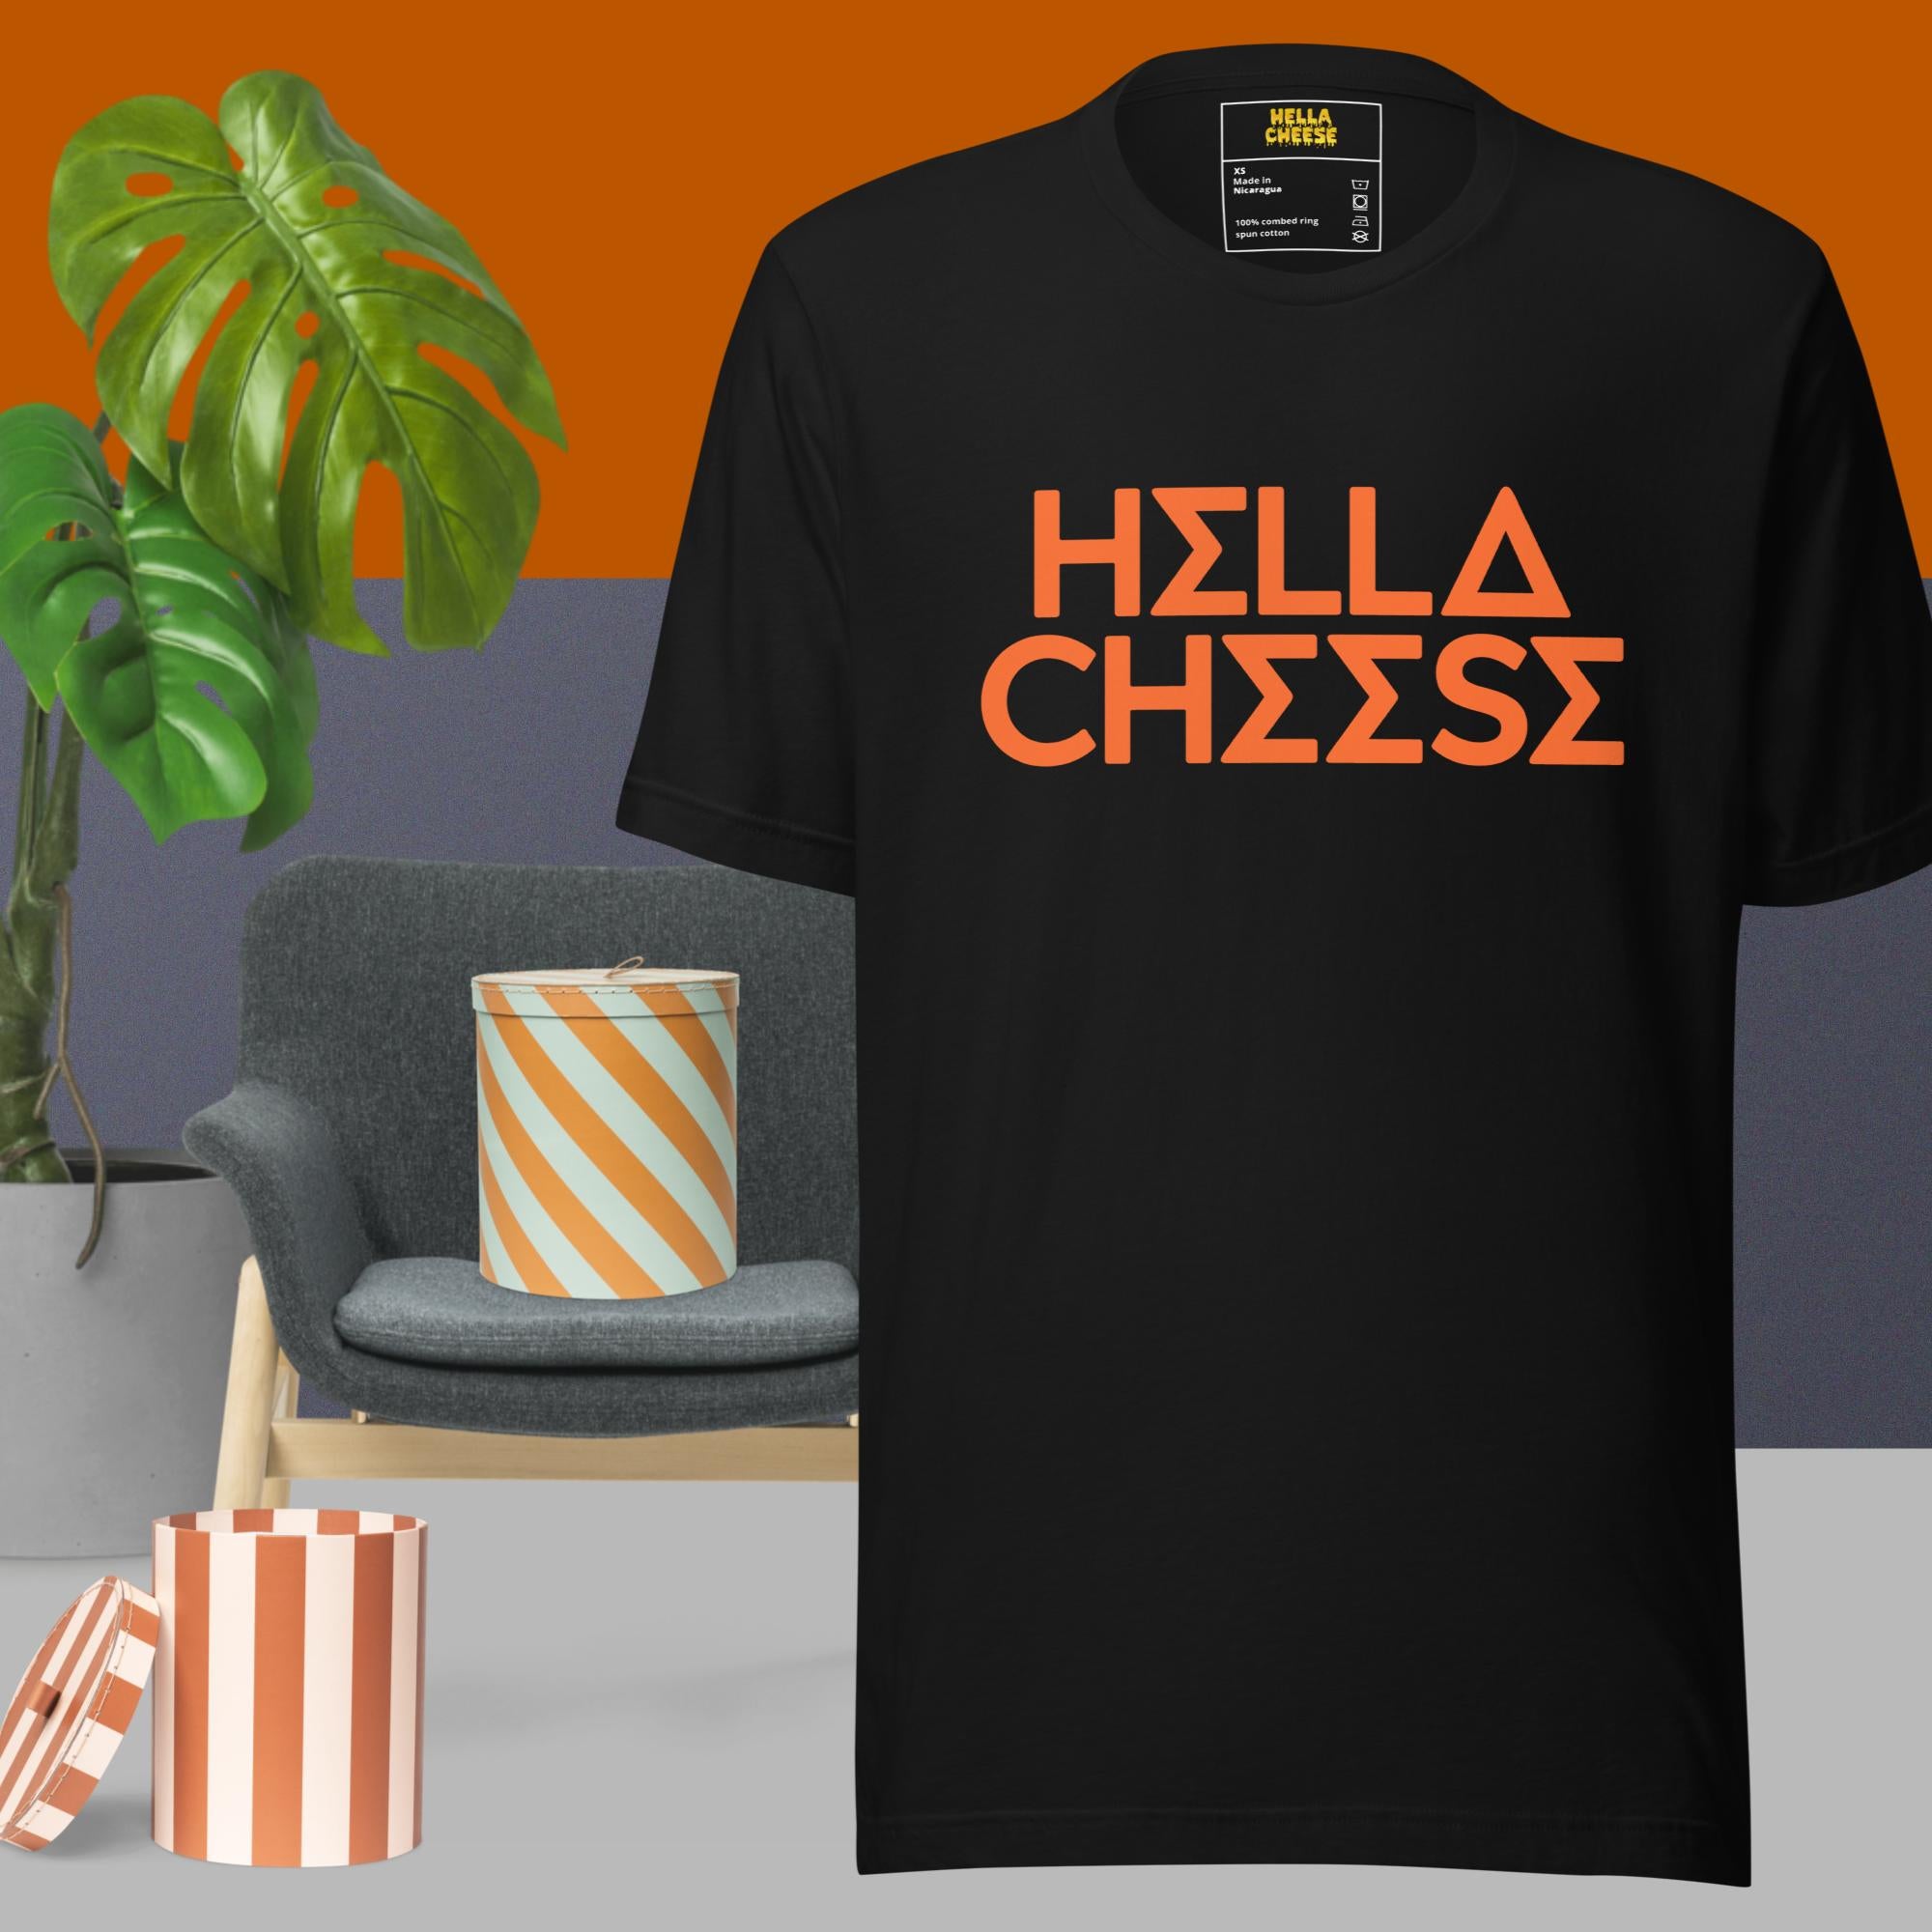 Hella Cheese Shirts